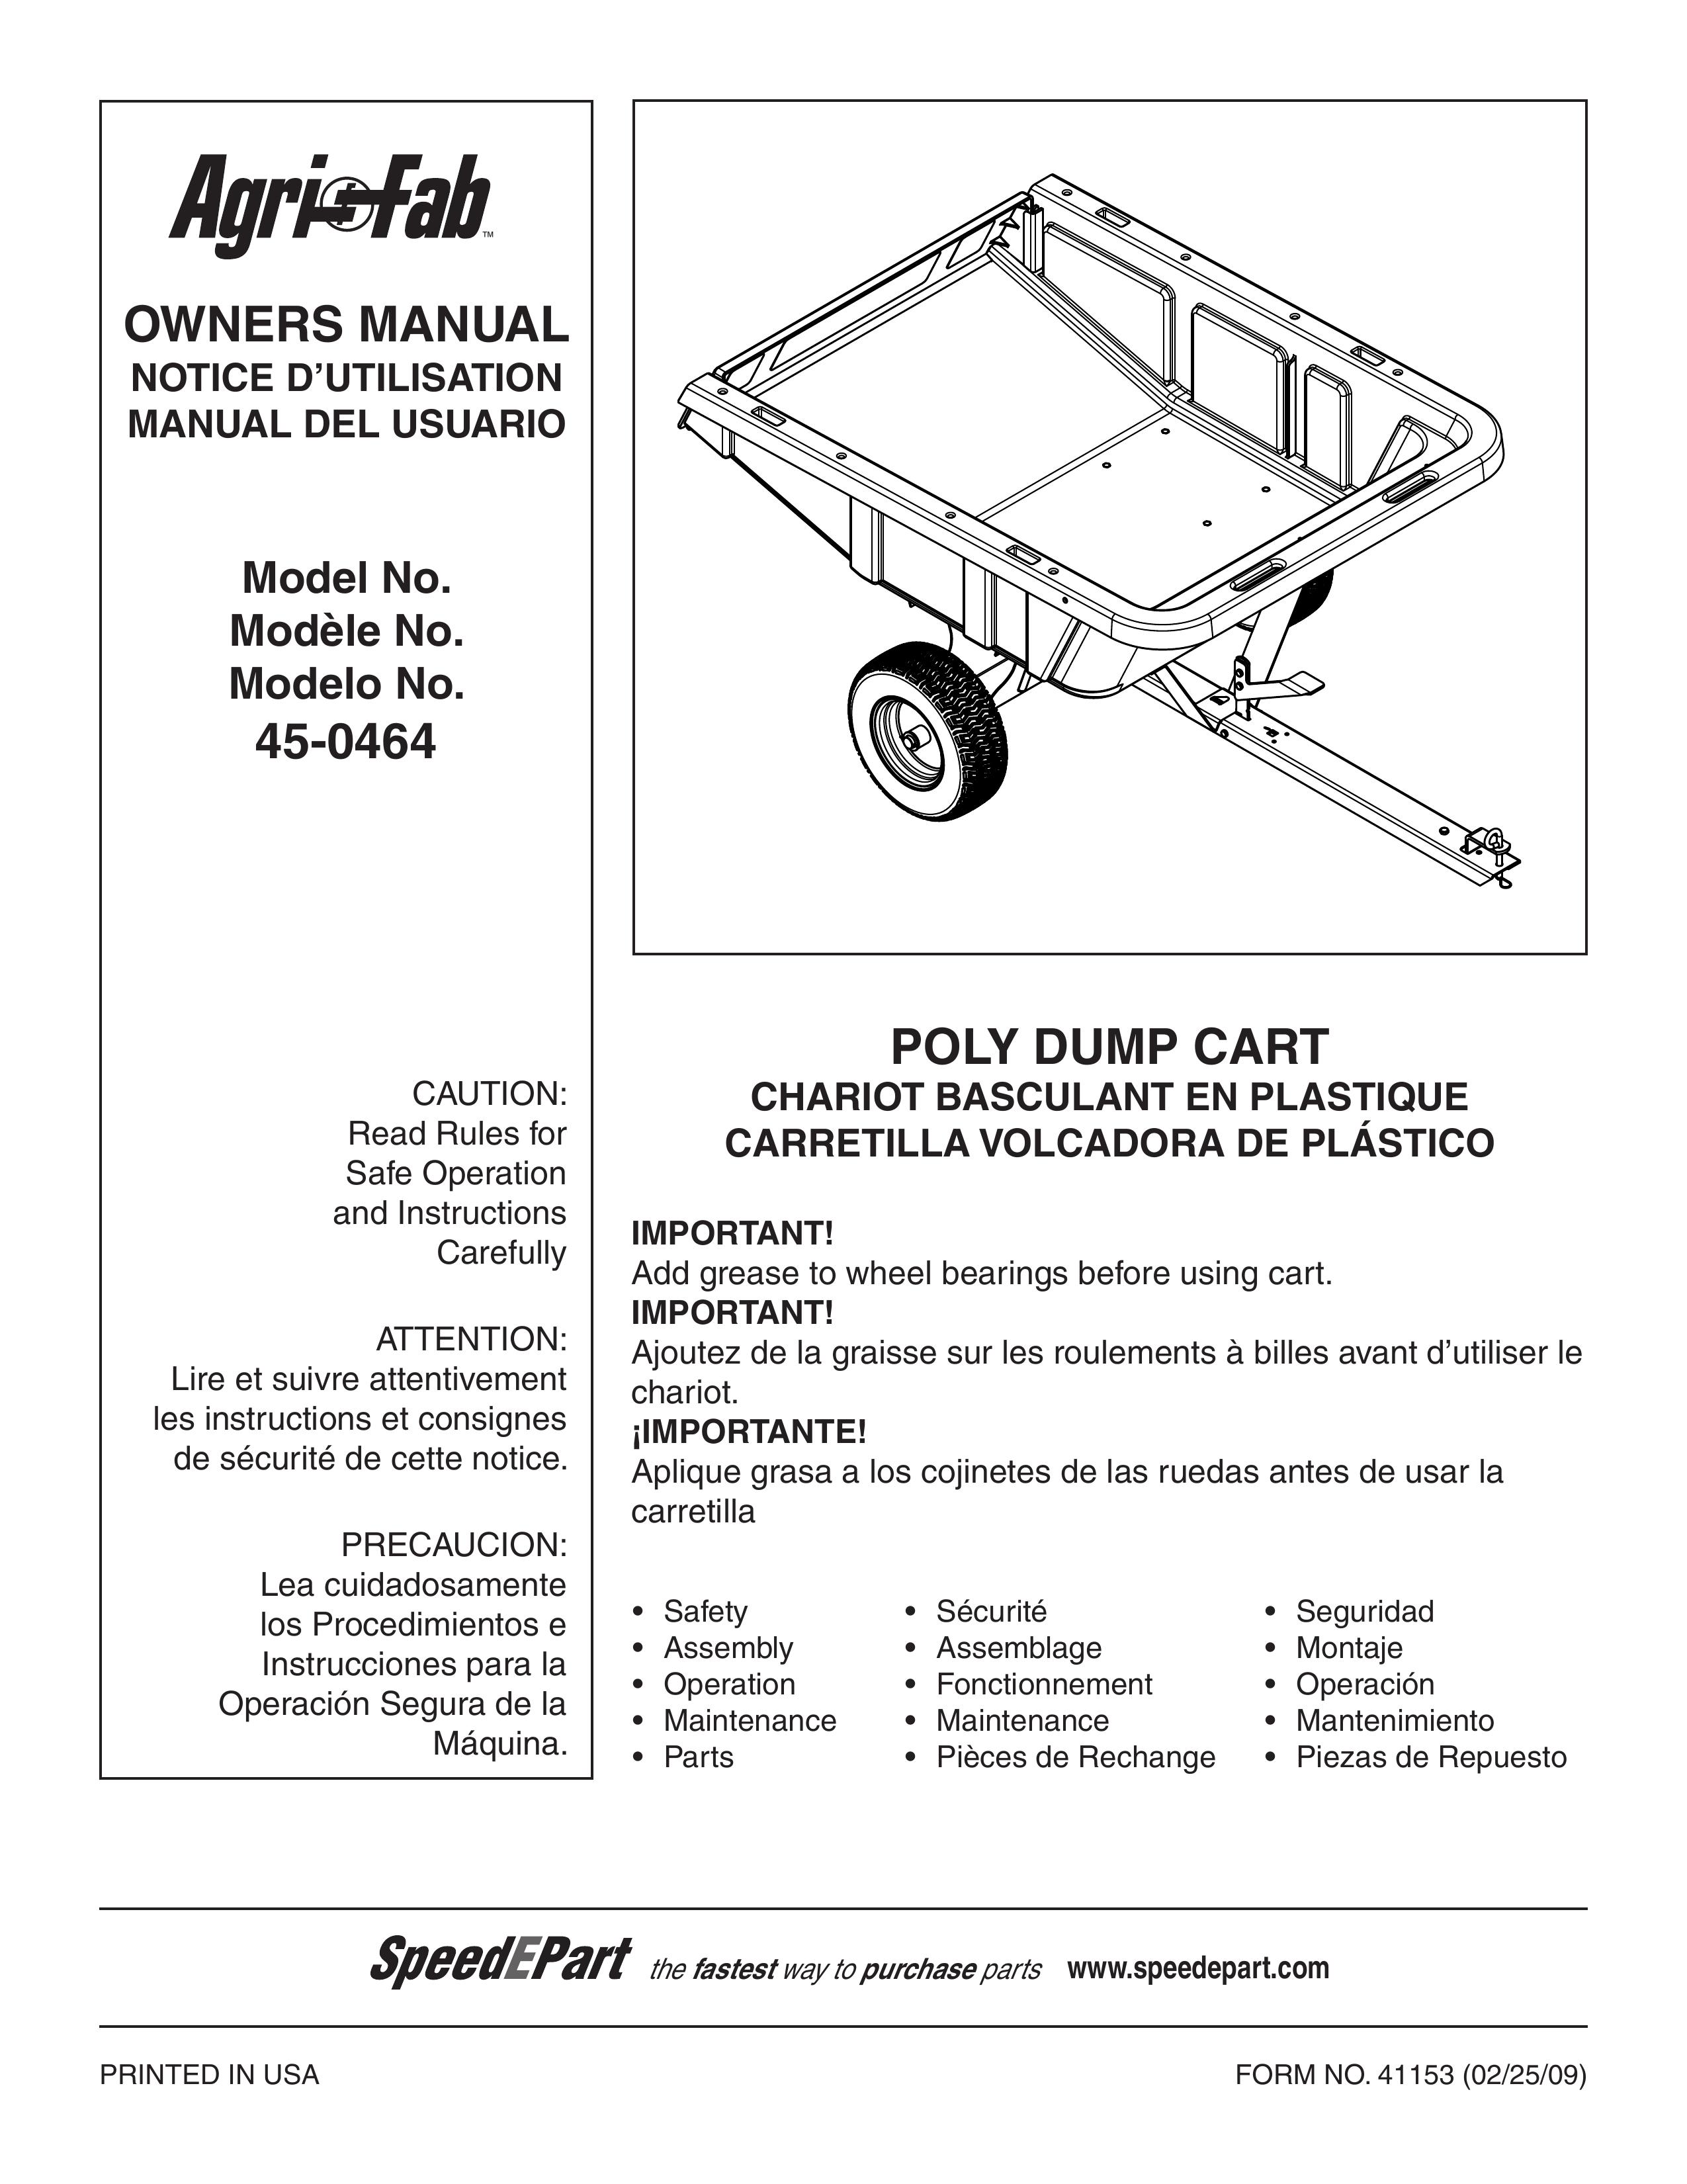 Agri-Fab 45-0464 Outdoor Cart User Manual